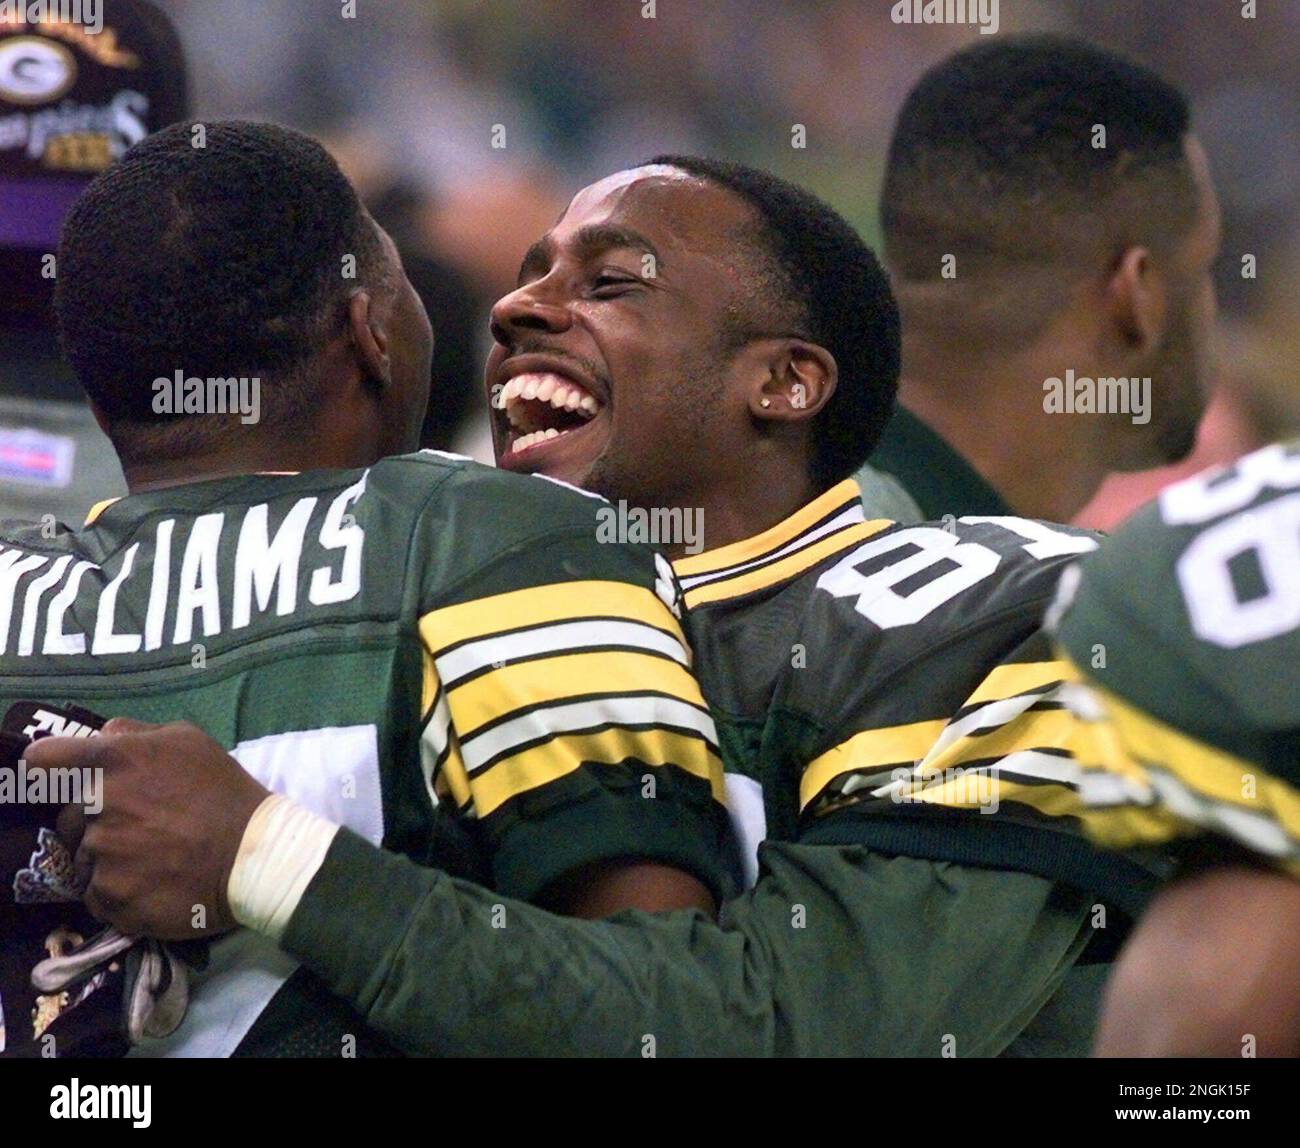 Green Bay Packers' Desmond Howard hugs teammate Tyrone Williams